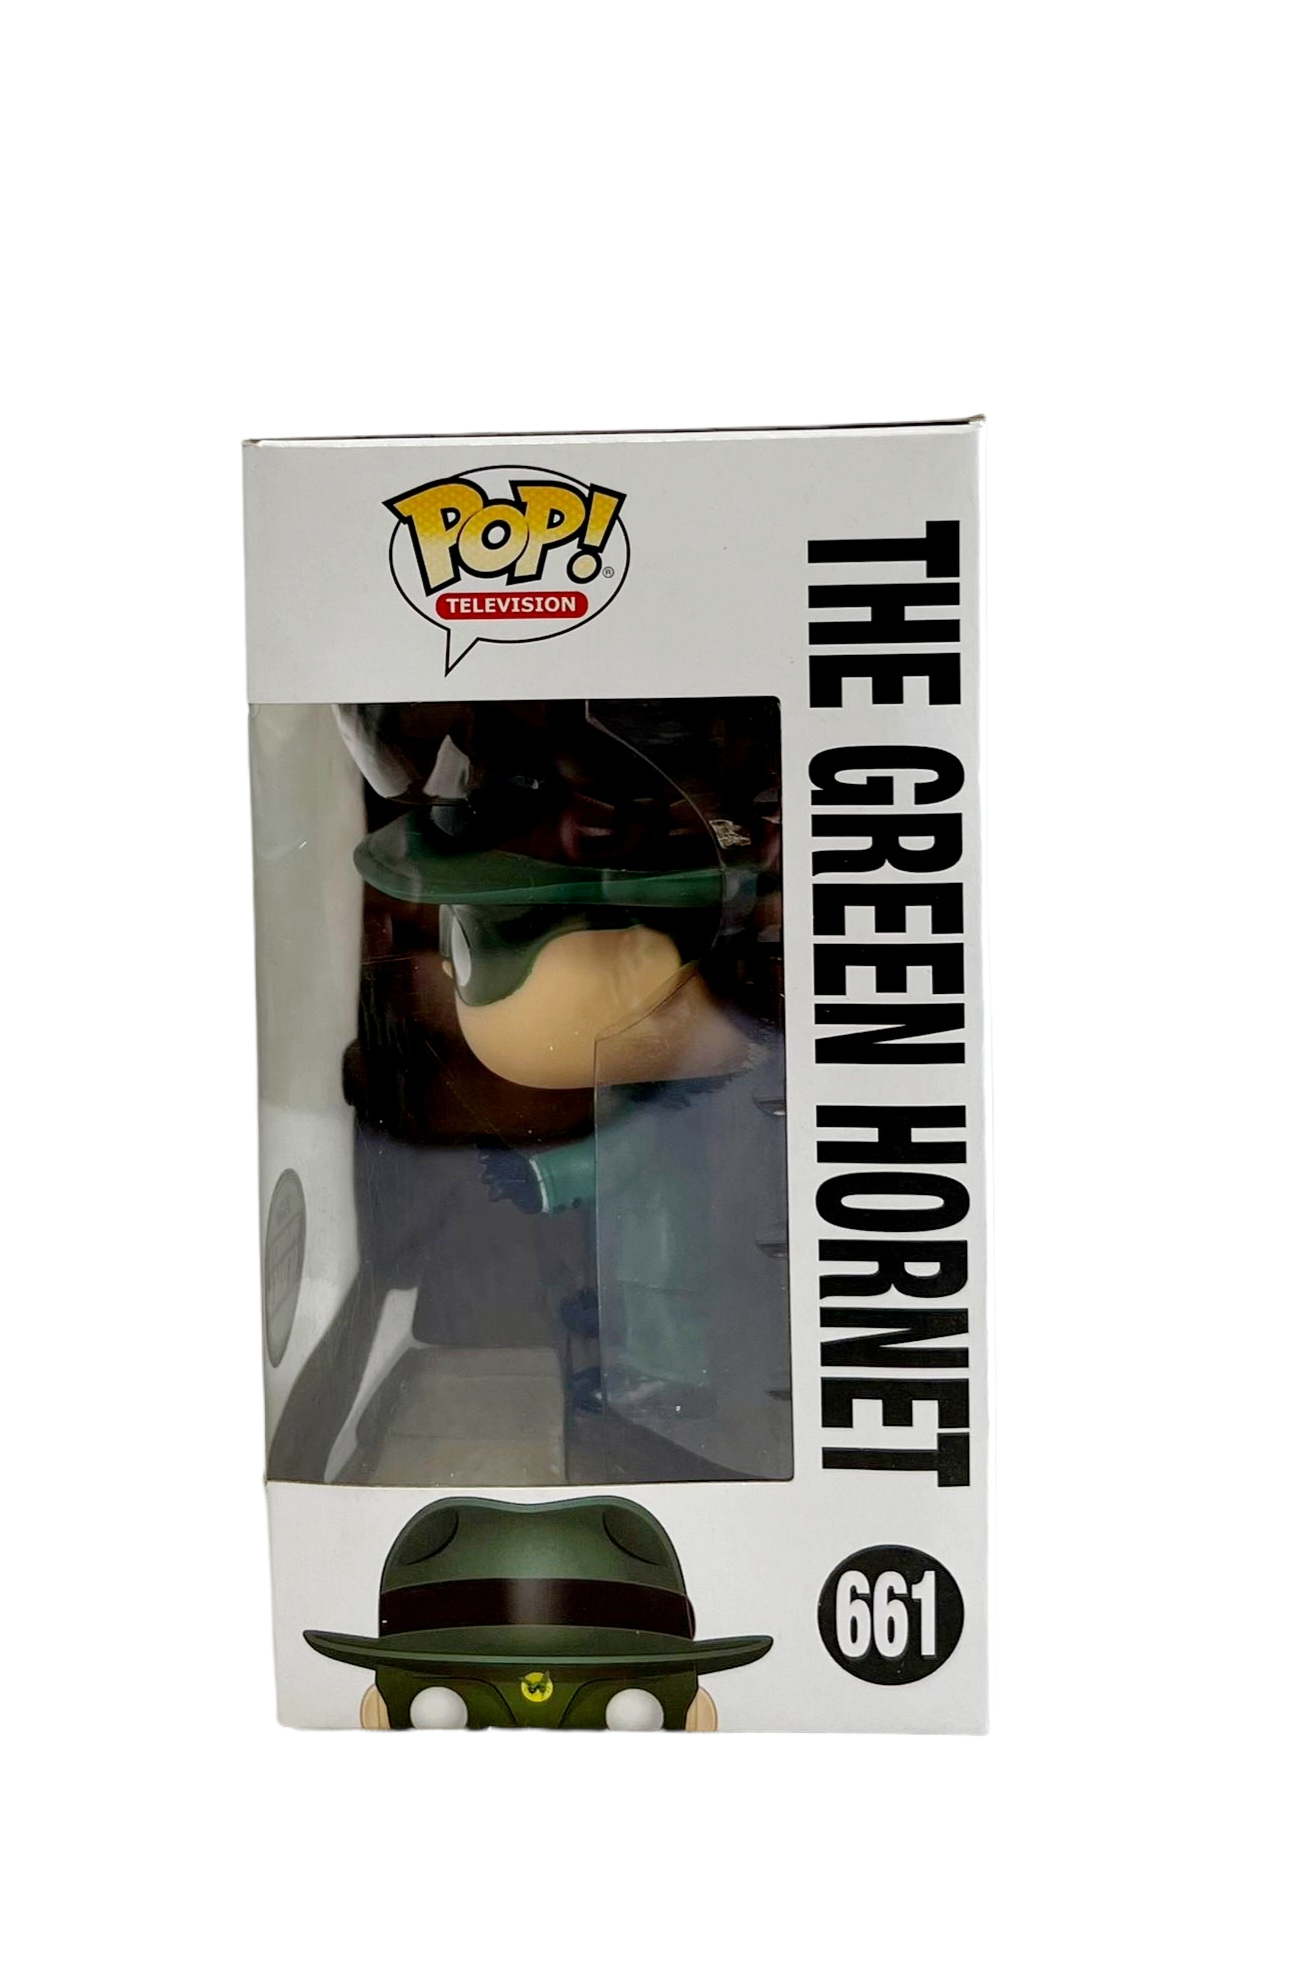 FUNKO POP!! #661 THE GREEN HORNET "The Green Hornet''